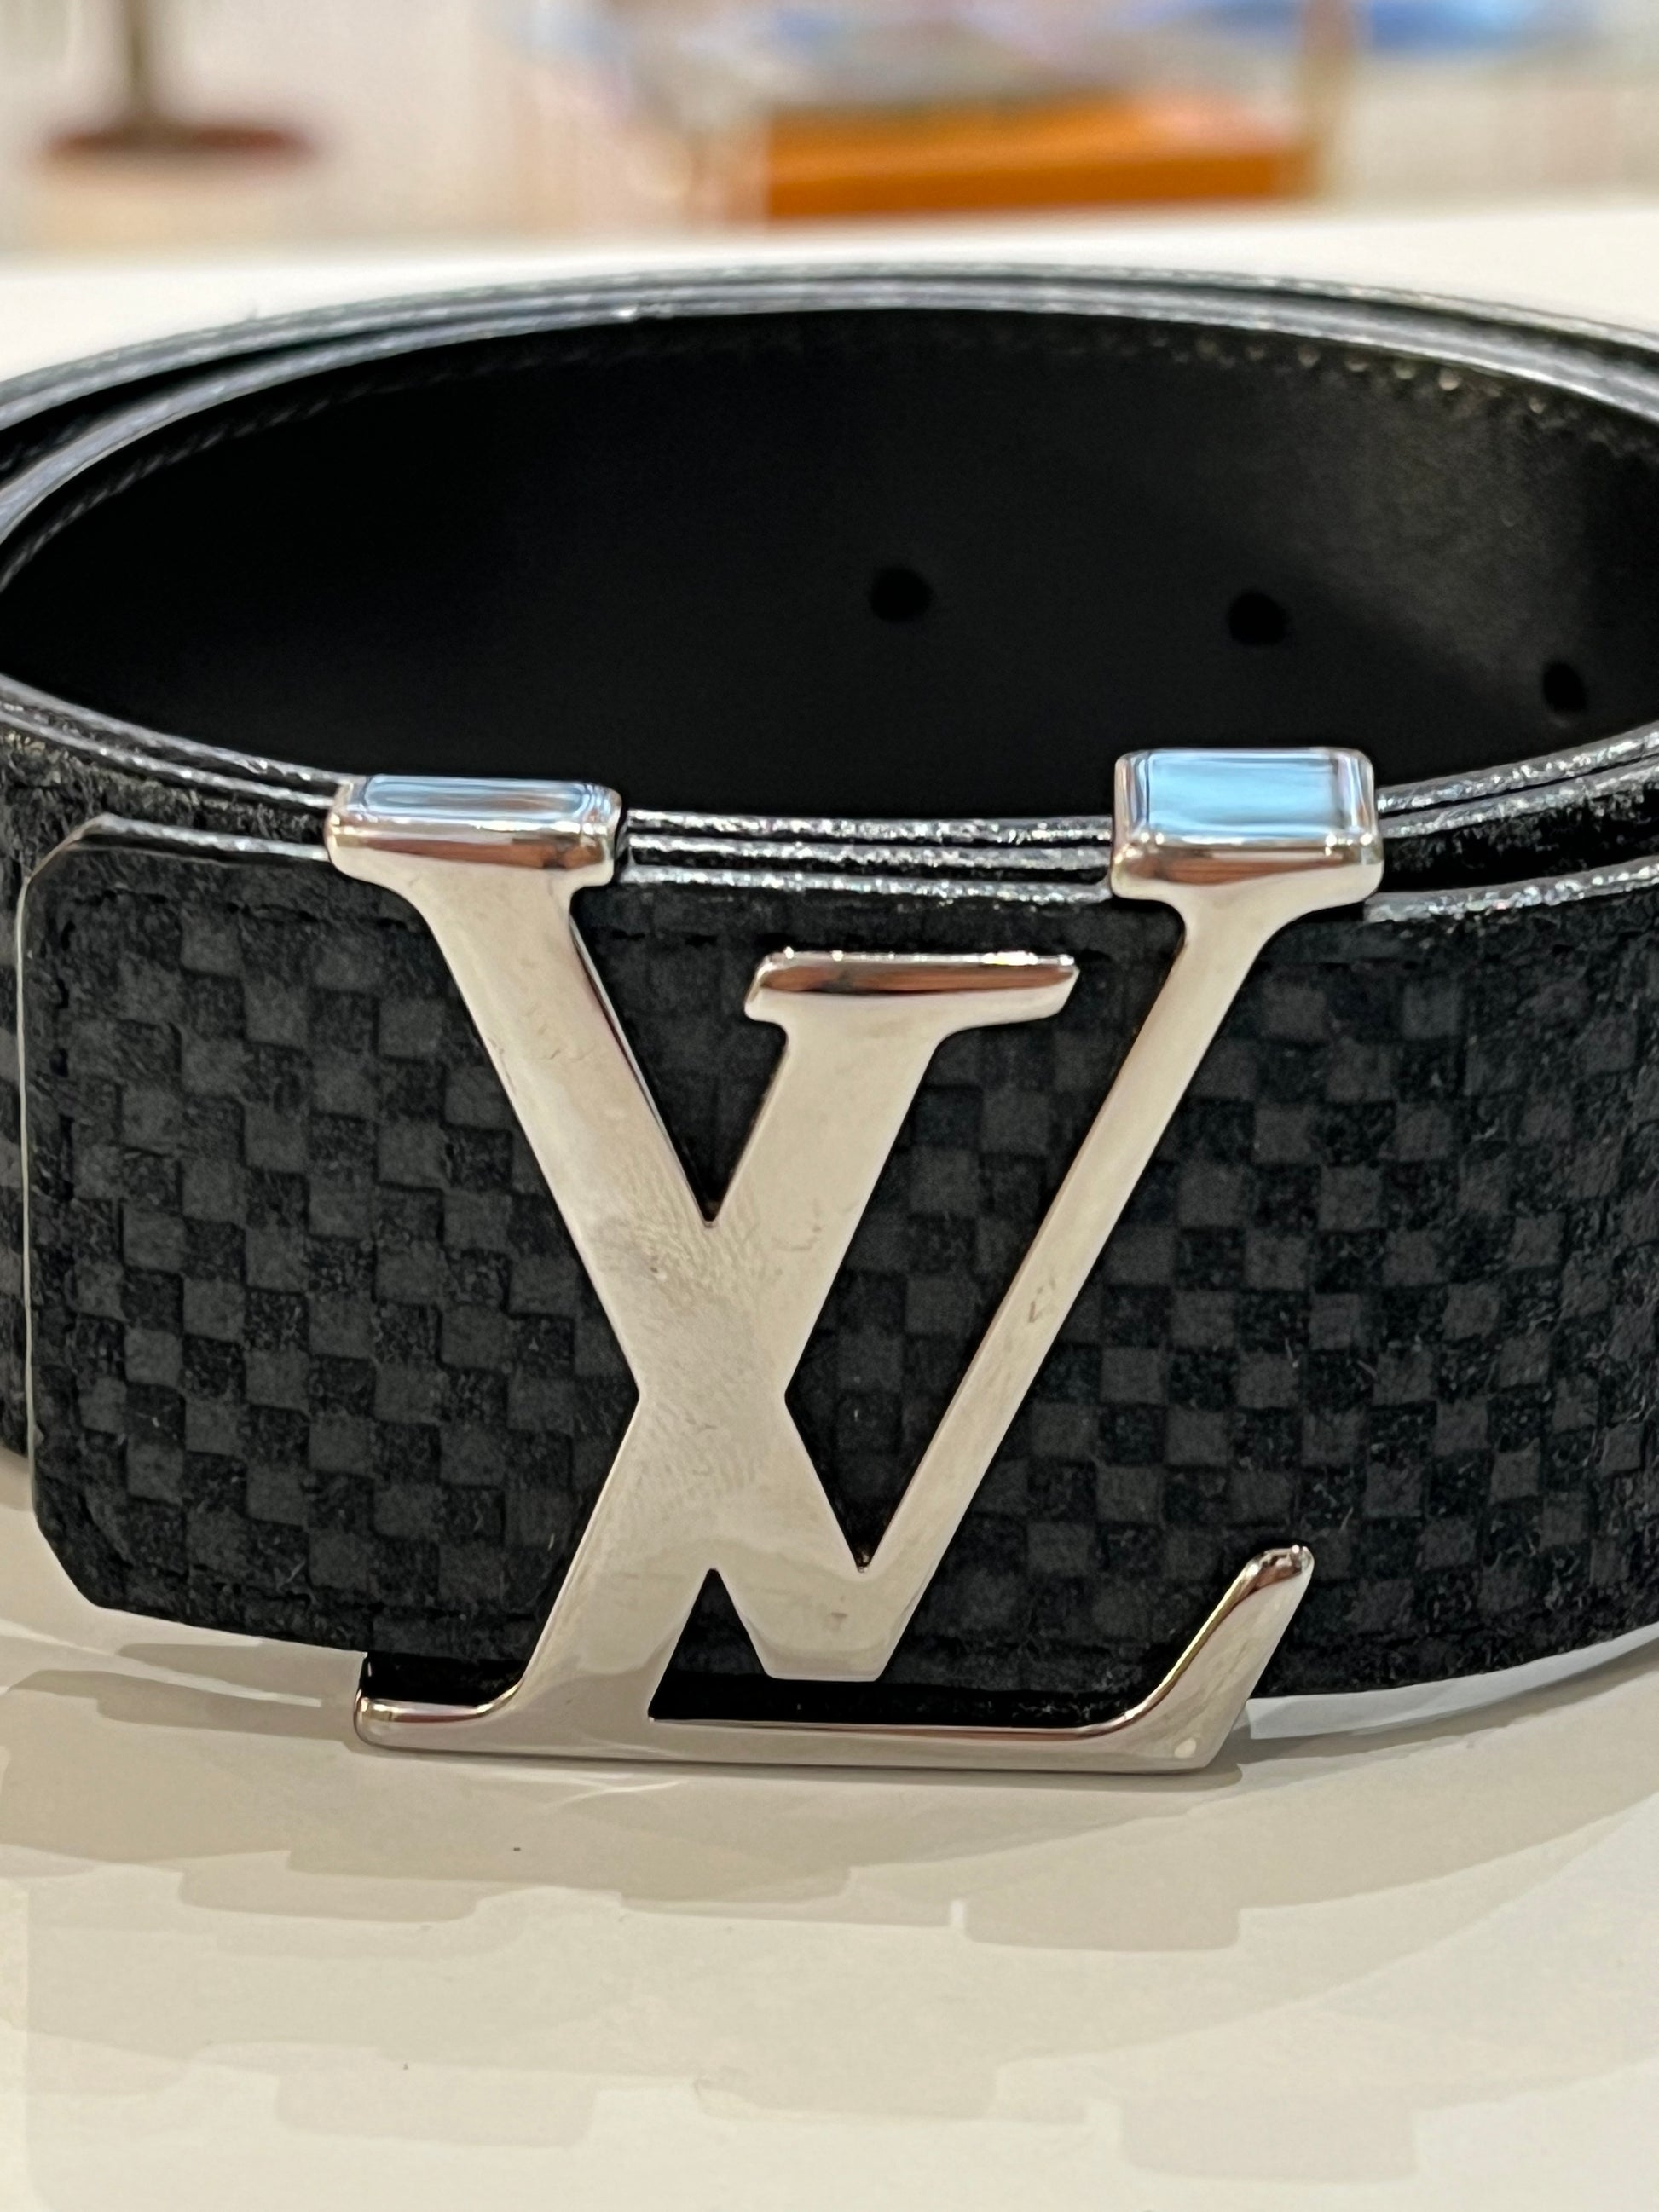 Cintura louis vuitton nera - Abbigliamento e Accessori In vendita a Verona